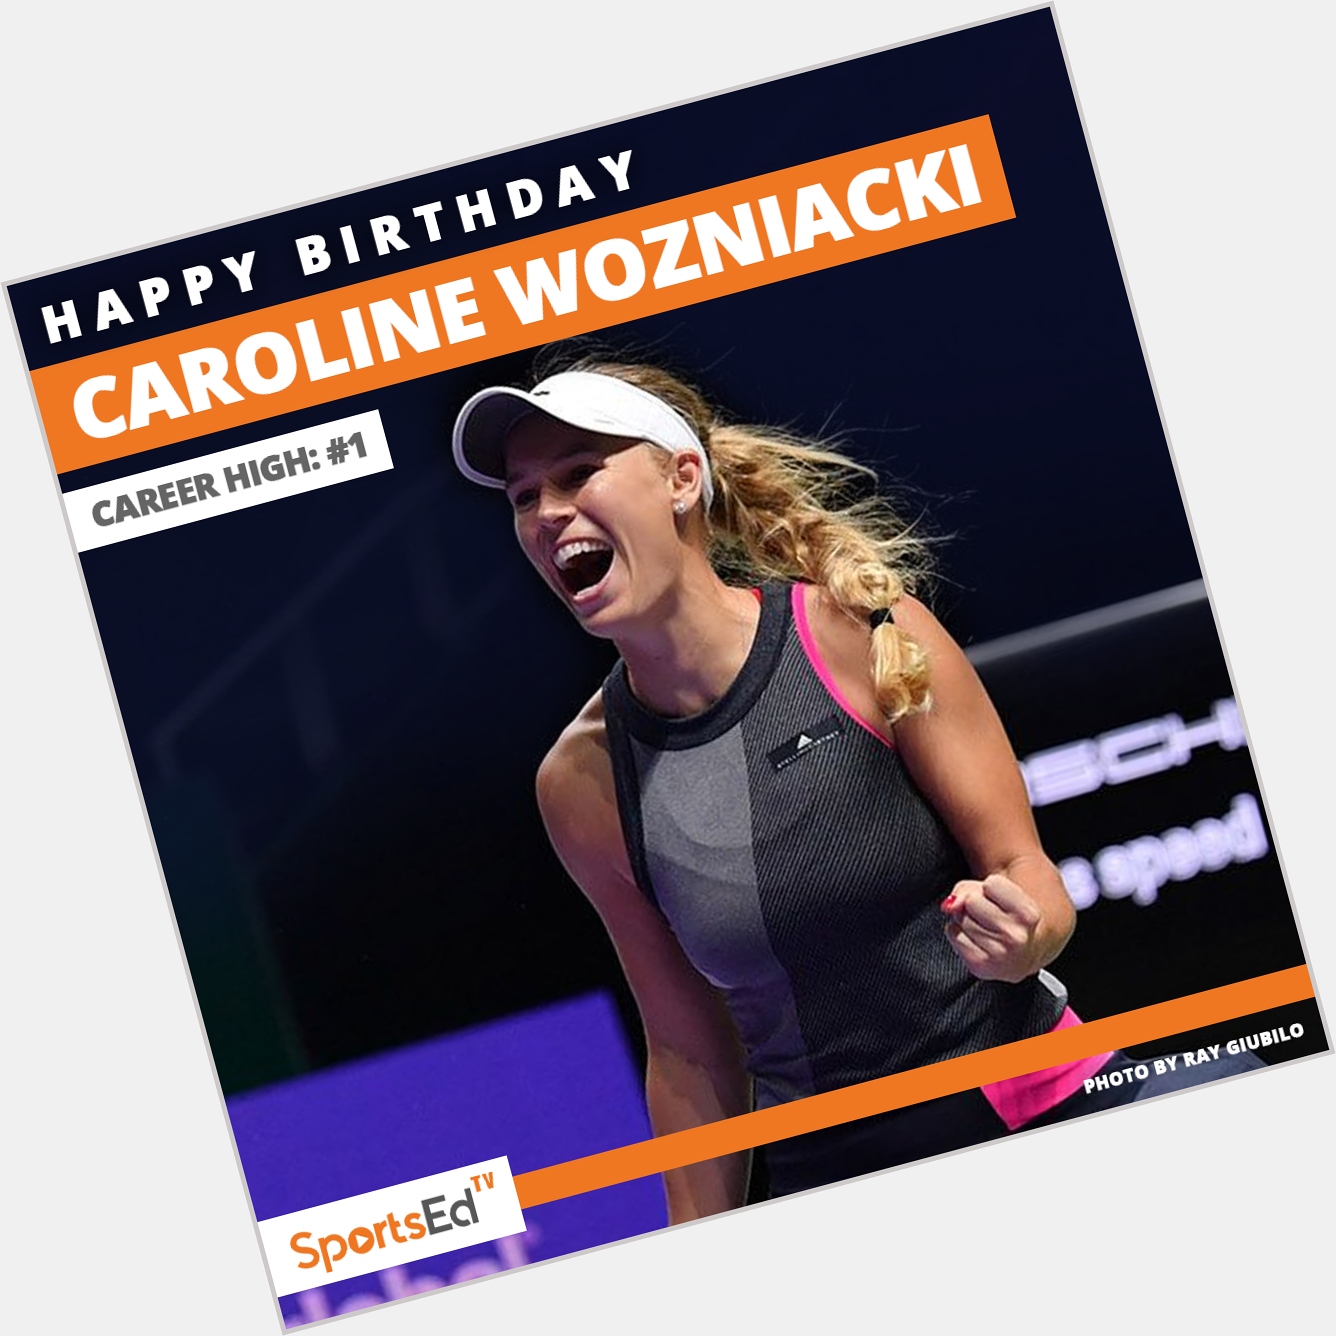 Happy birthday to the former World No. 1 player, Caroline Wozniacki.   